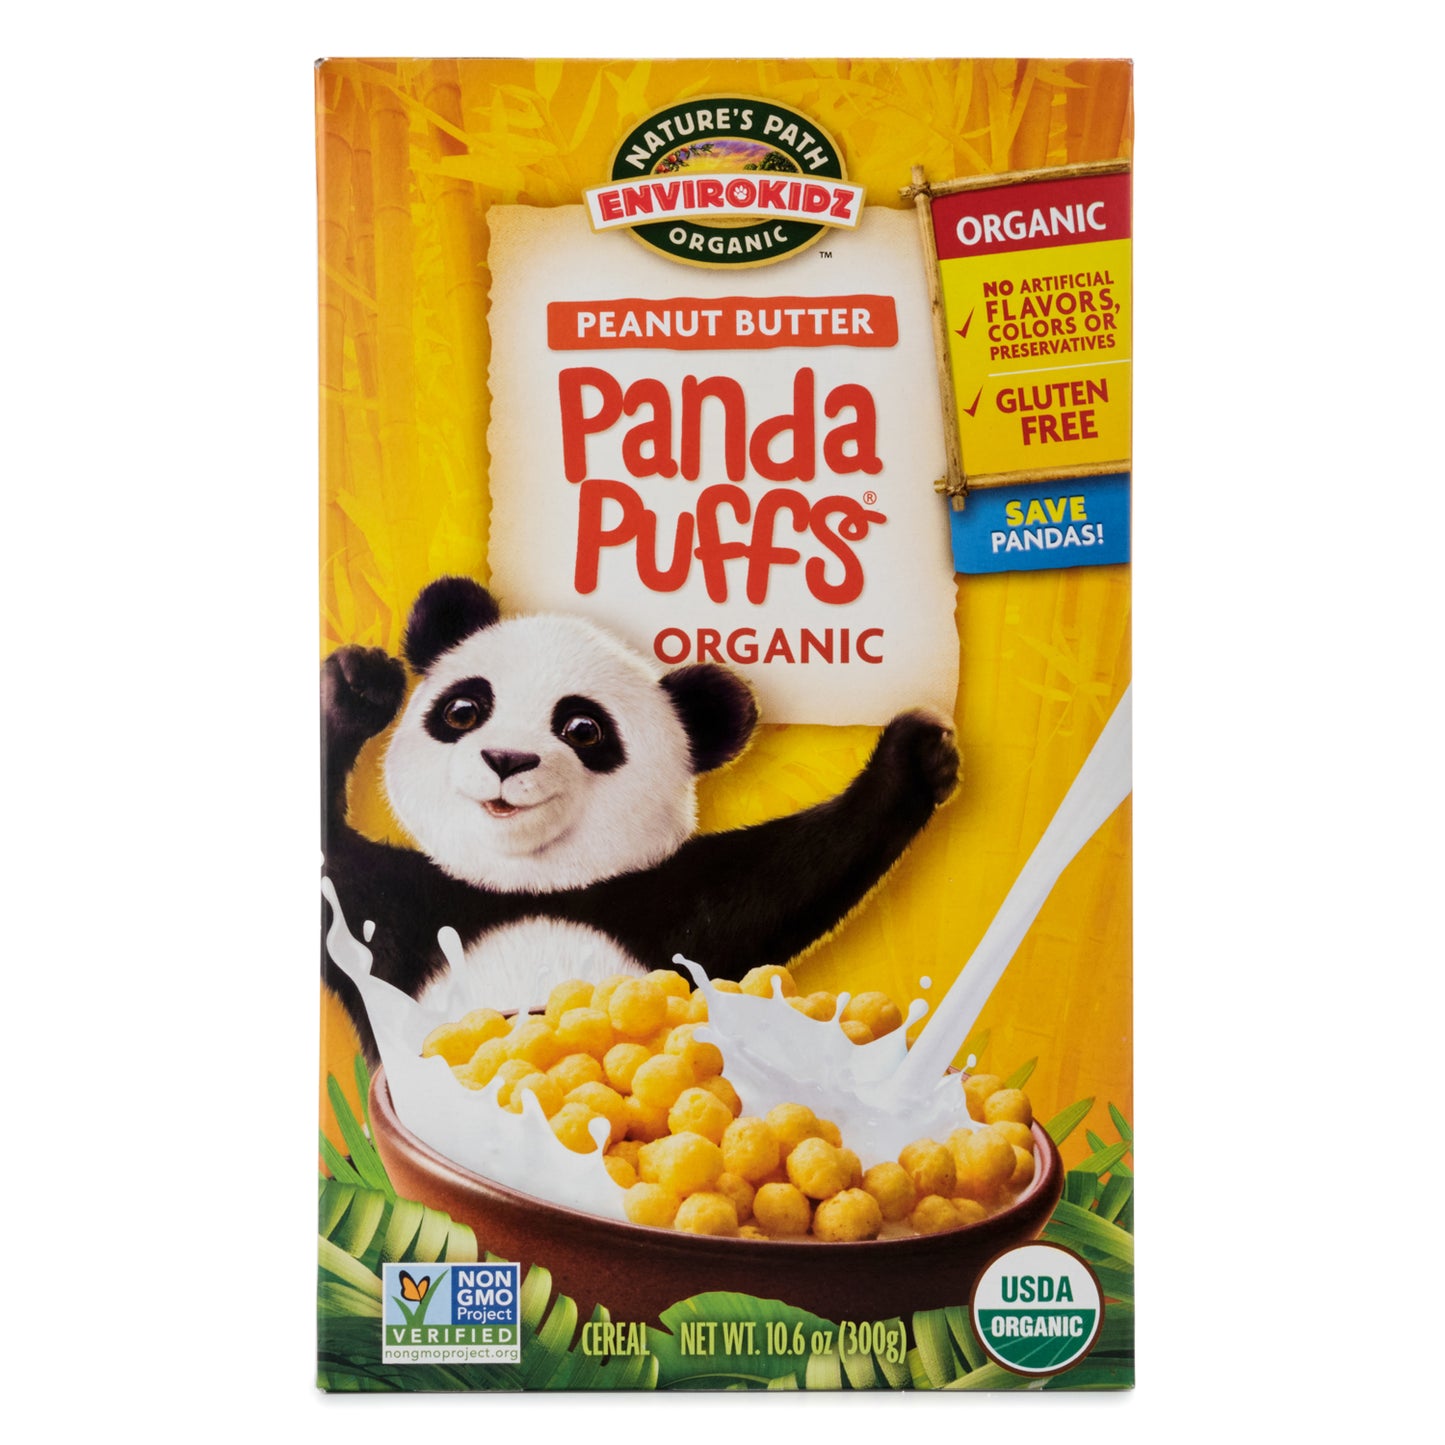 Envirokidz Organic Peanut Butter Panda Puffs 300g